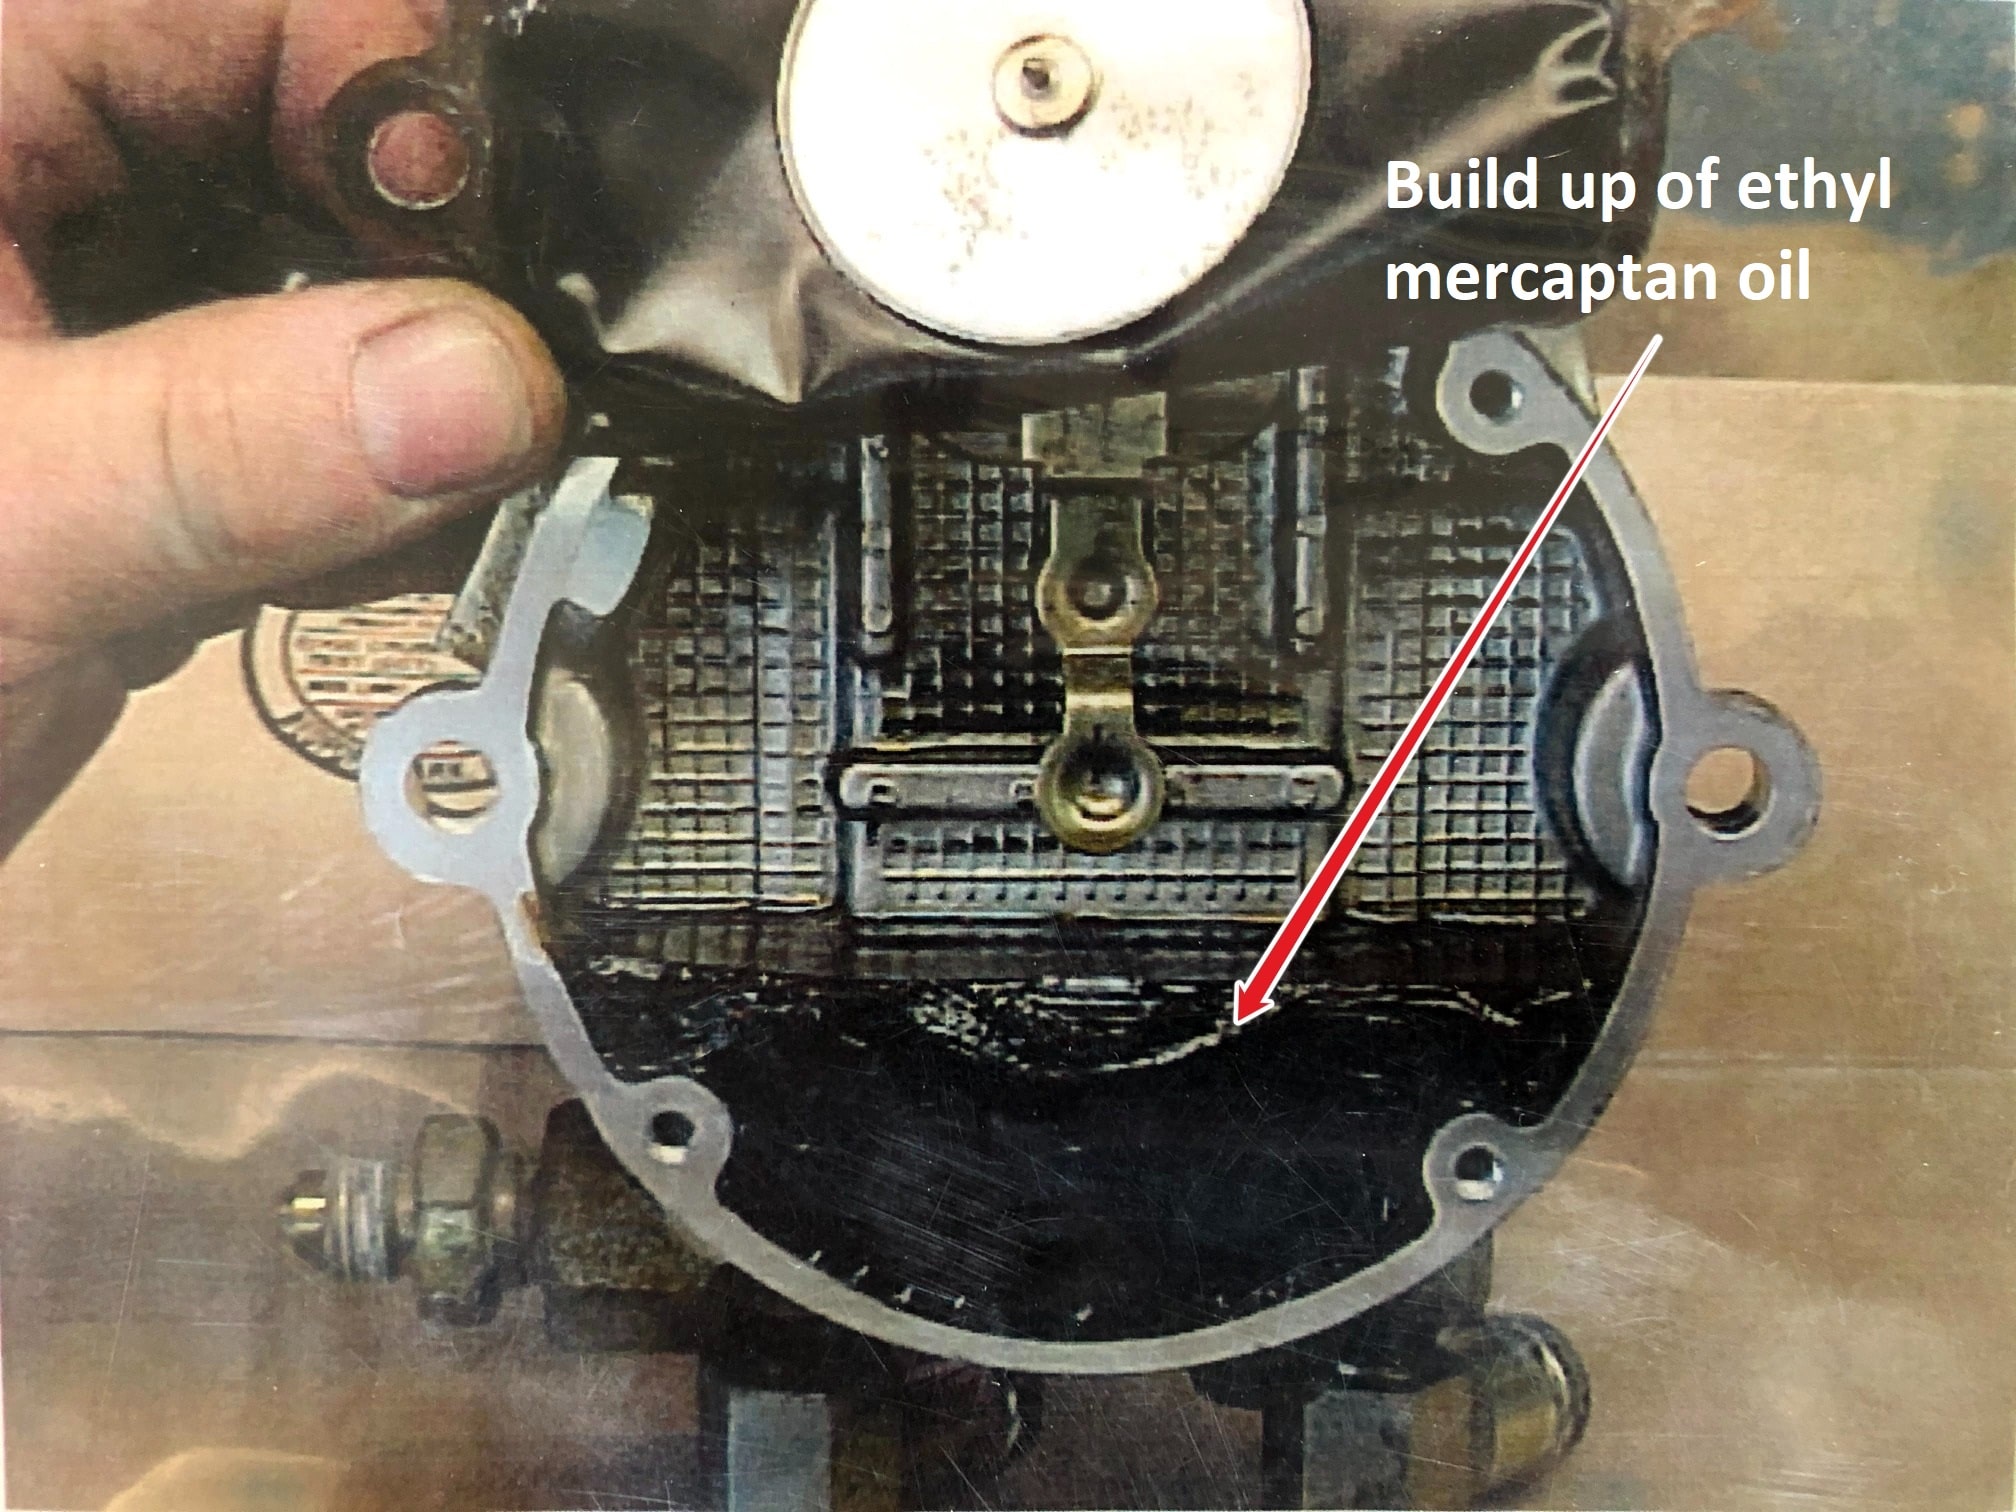 A build up of mercaptan oil in a forklift regulator